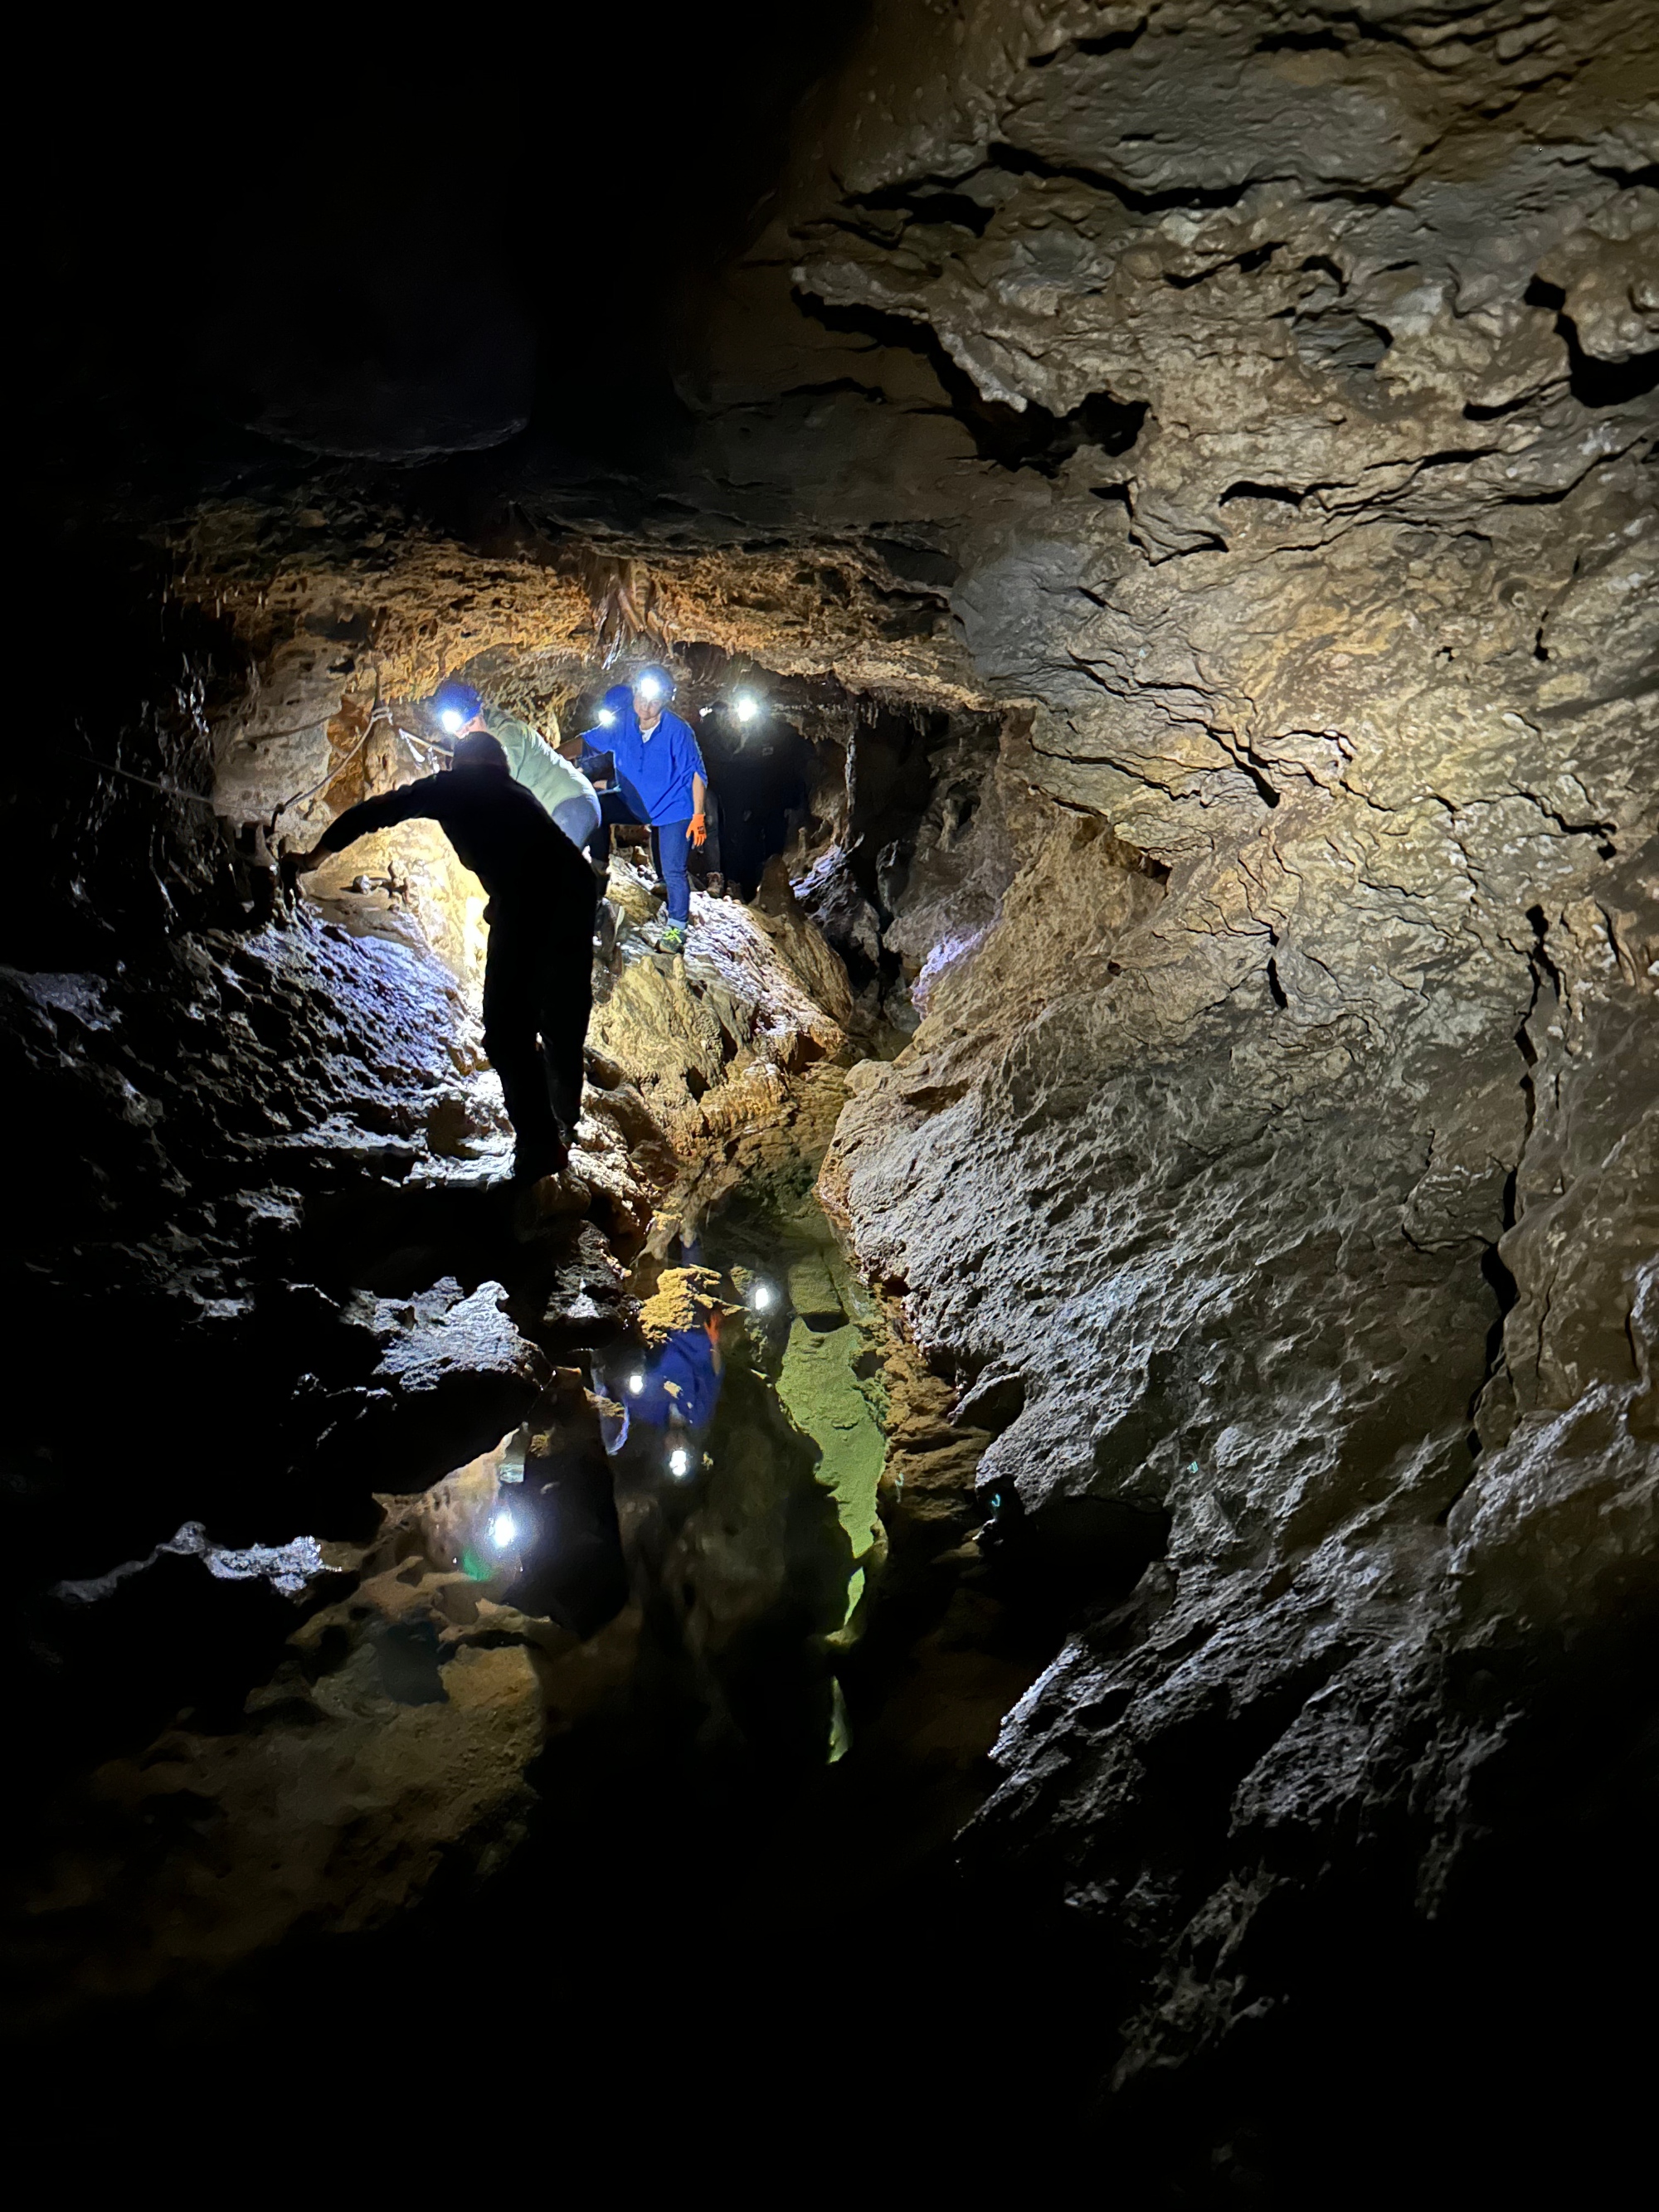 Guided tour of the Grotta degli Stretti